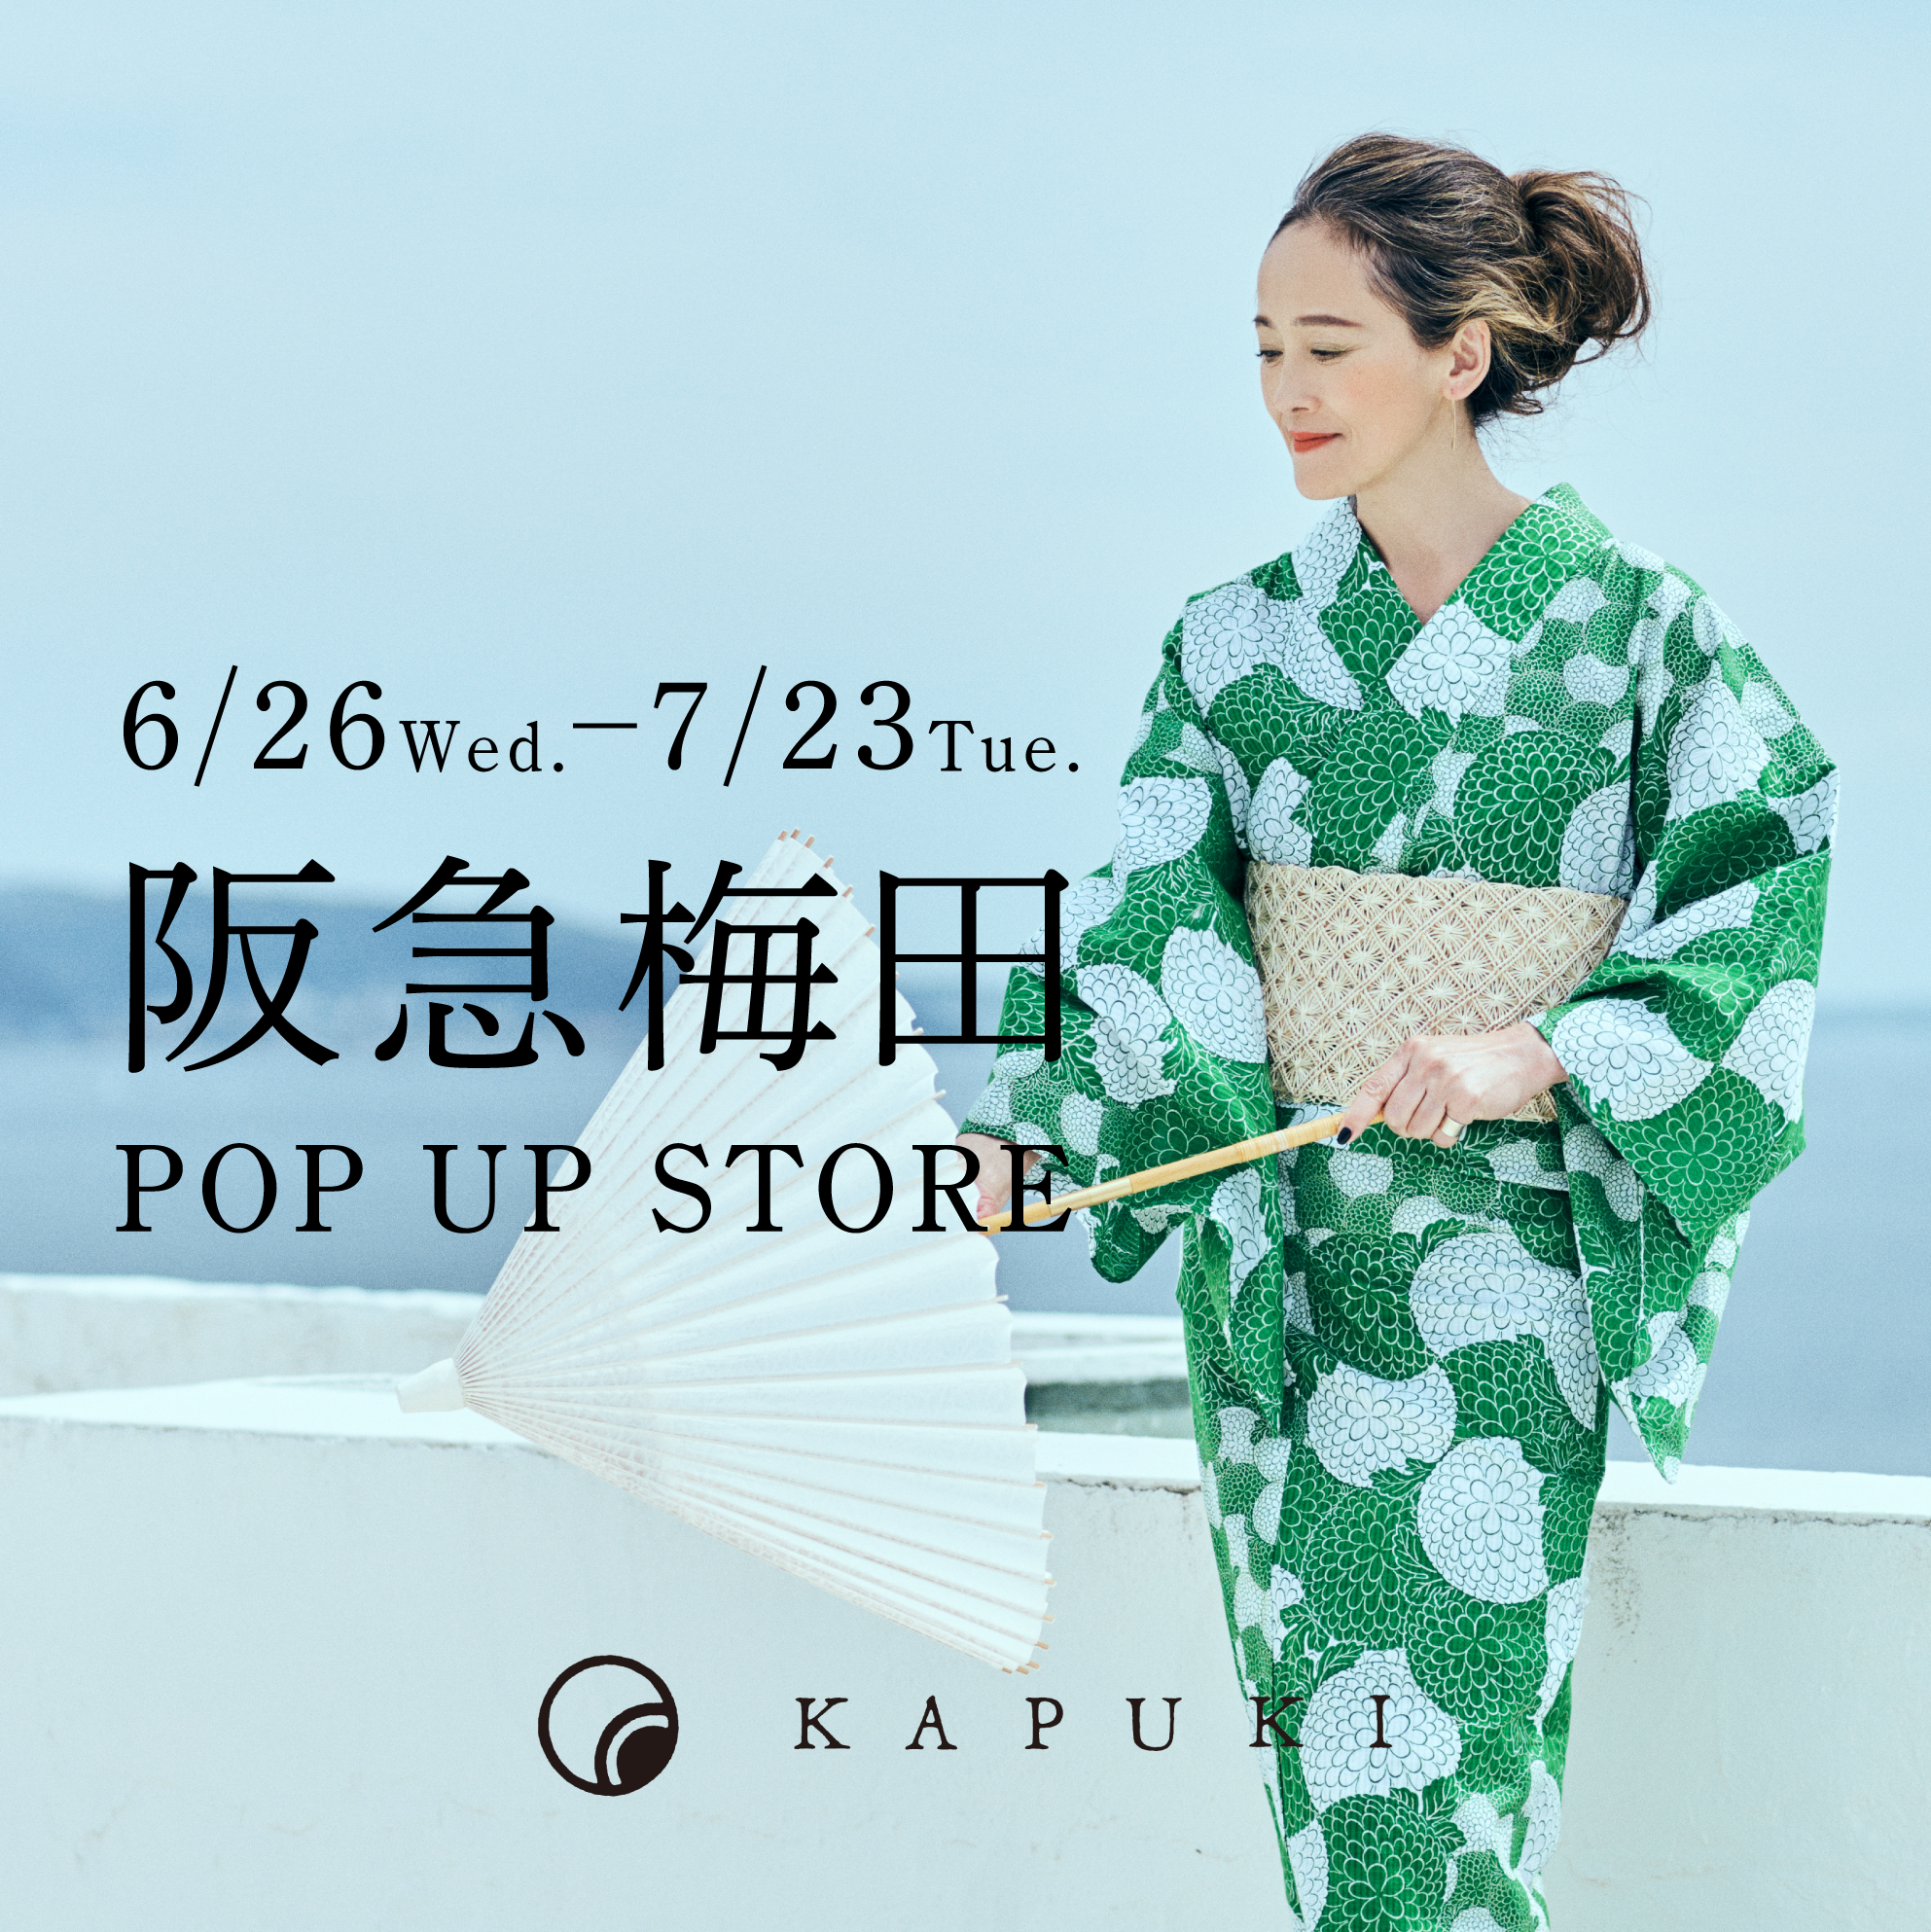 【6/26 - 7/23】阪急梅田 POP UP STORE